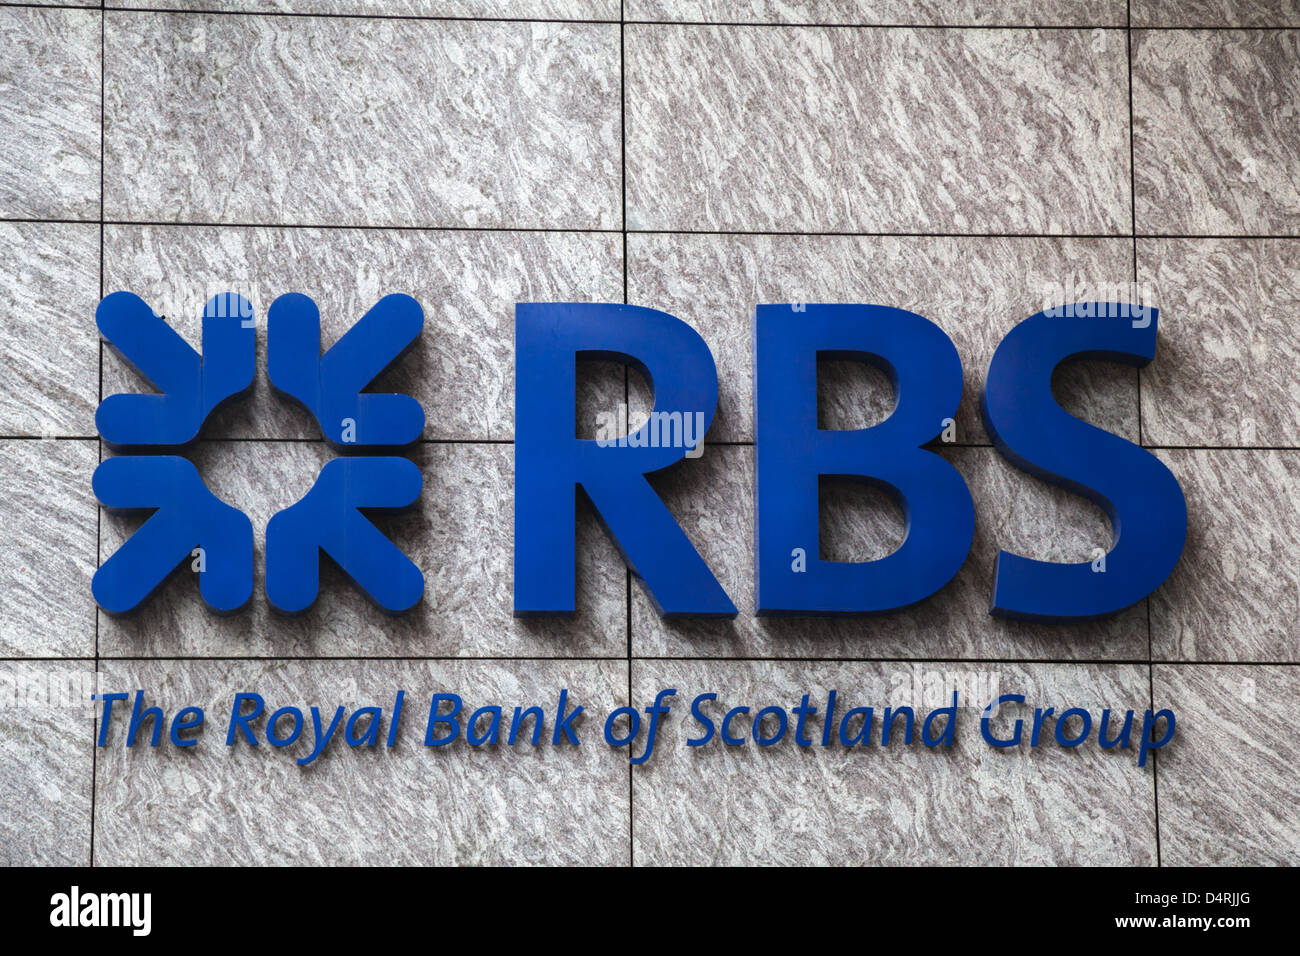 Une vue générale de la Royal Bank of Scotland (RBS) Logo du Devonshire Square à Londres Banque D'Images